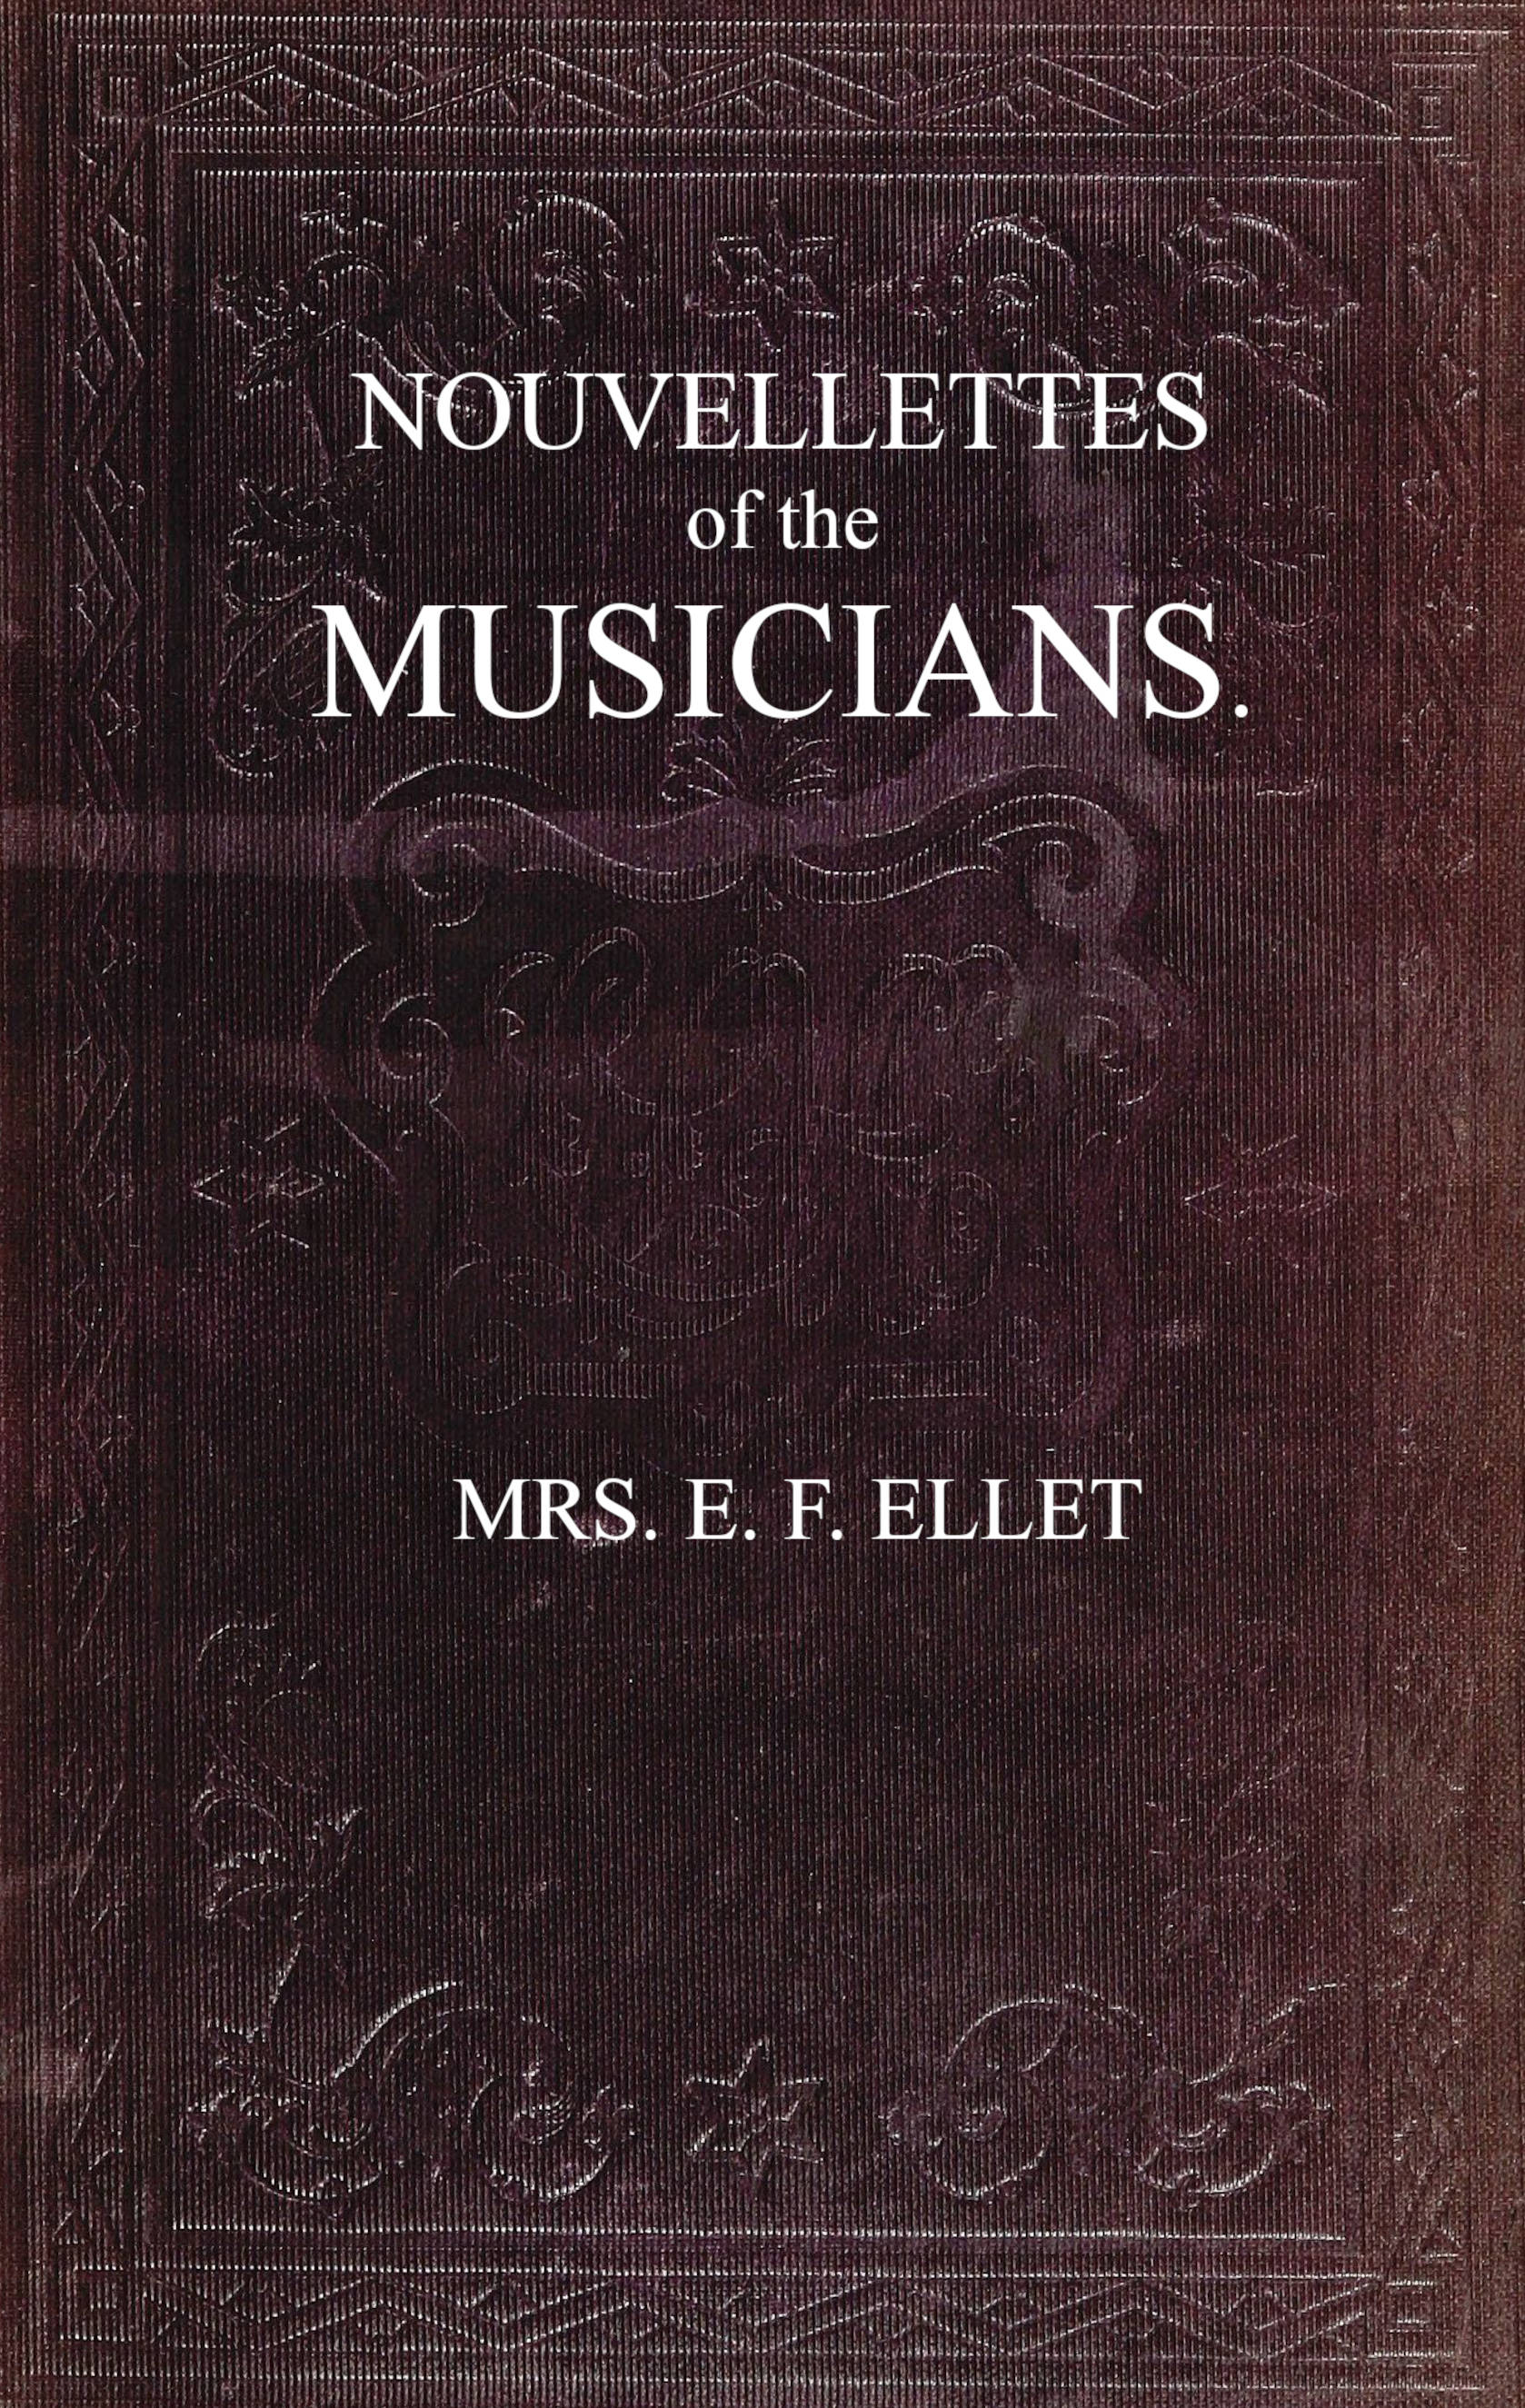 Nouvellettes of the musicians